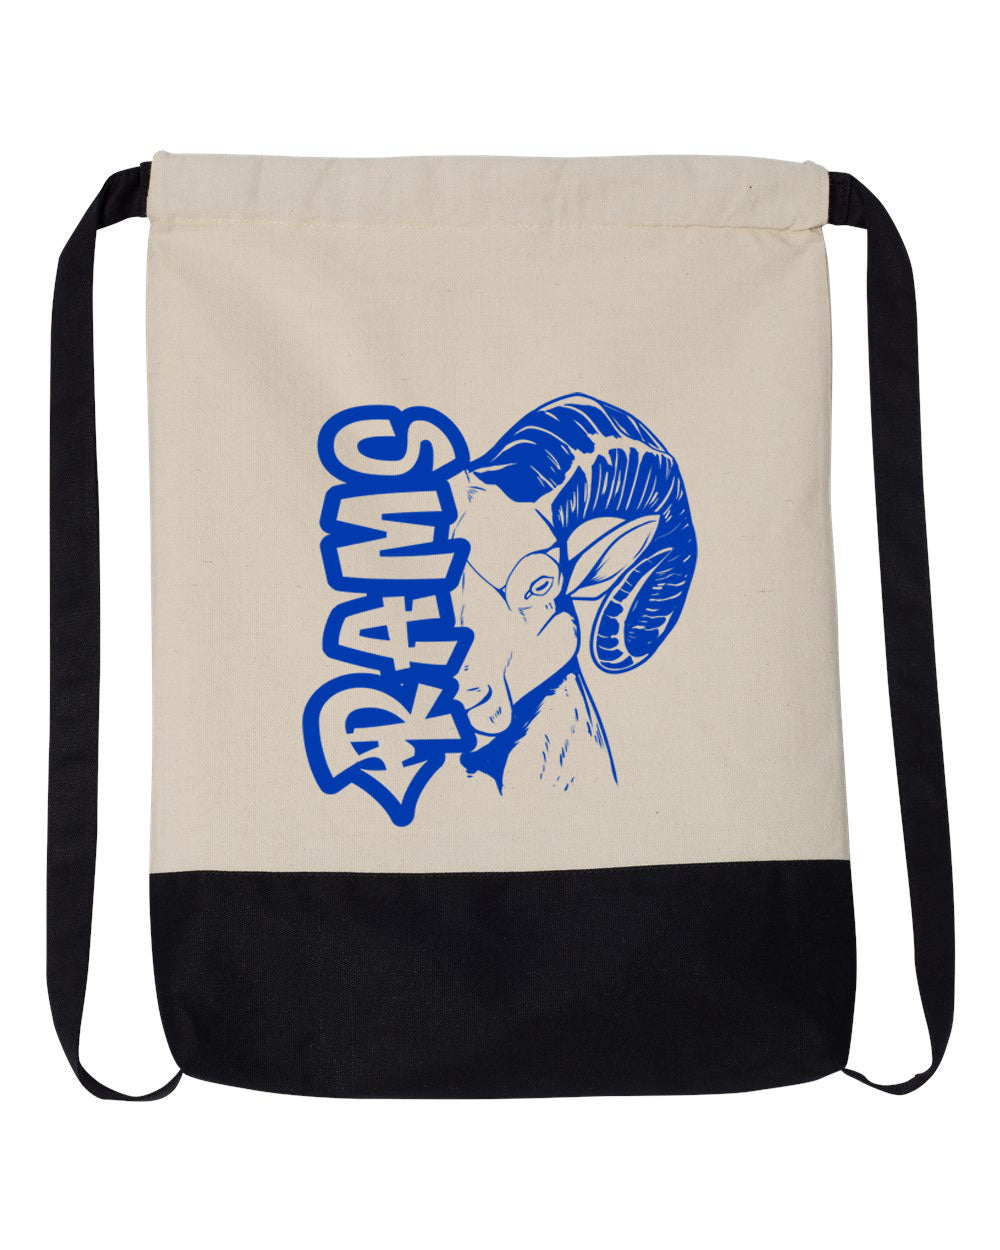 Sussex Middle School design 7 Drawstring Bag